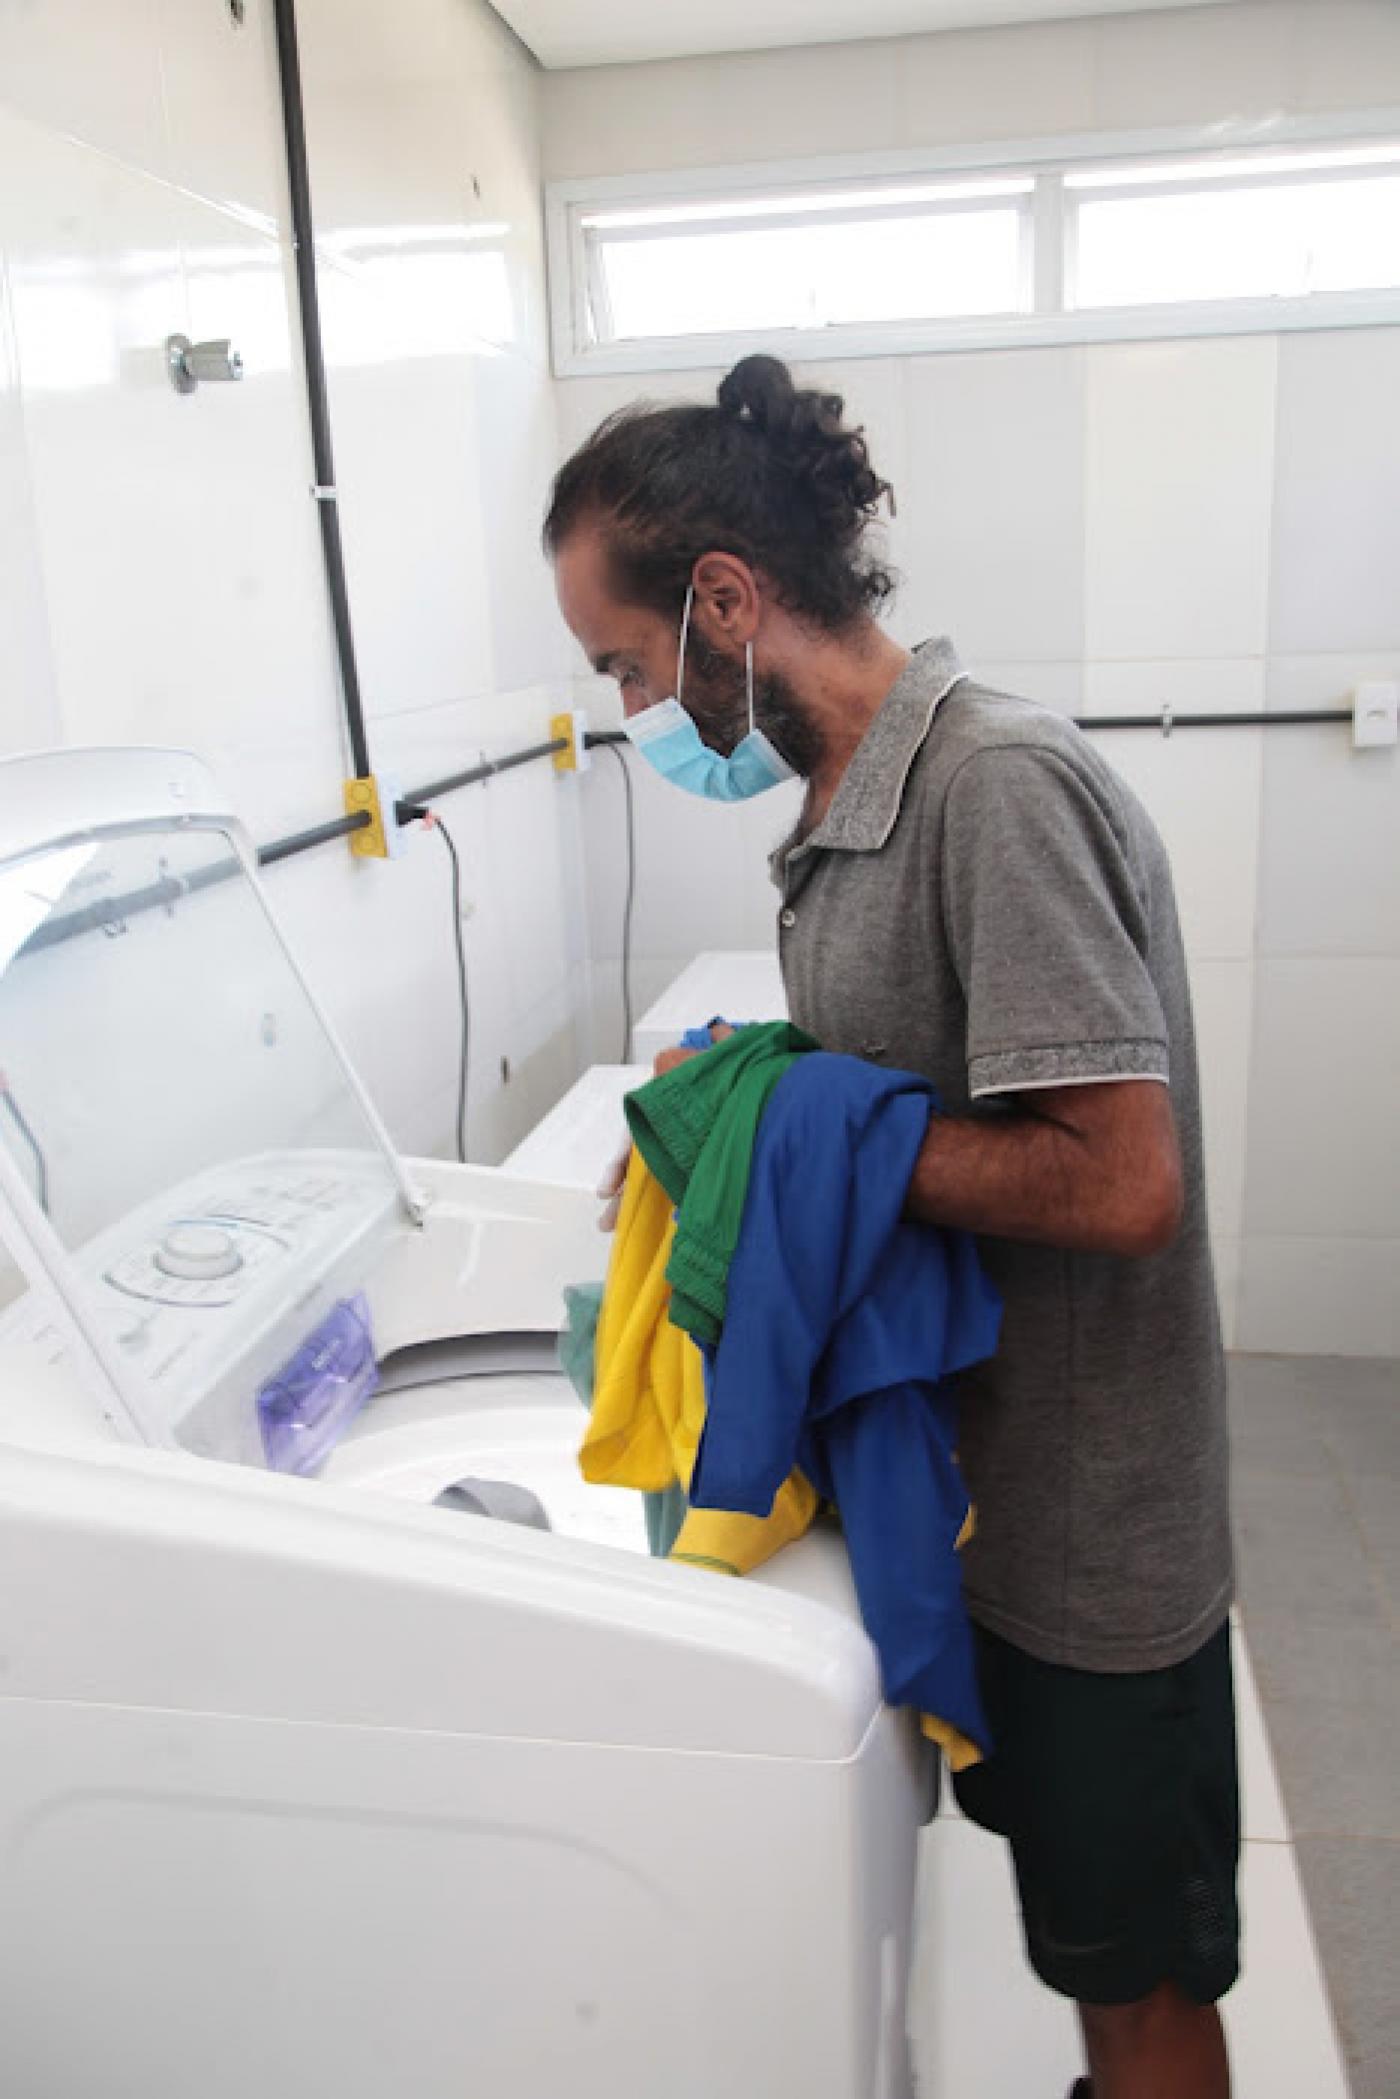 Homem retira roupas de máquina de lavar. #pratodosverem